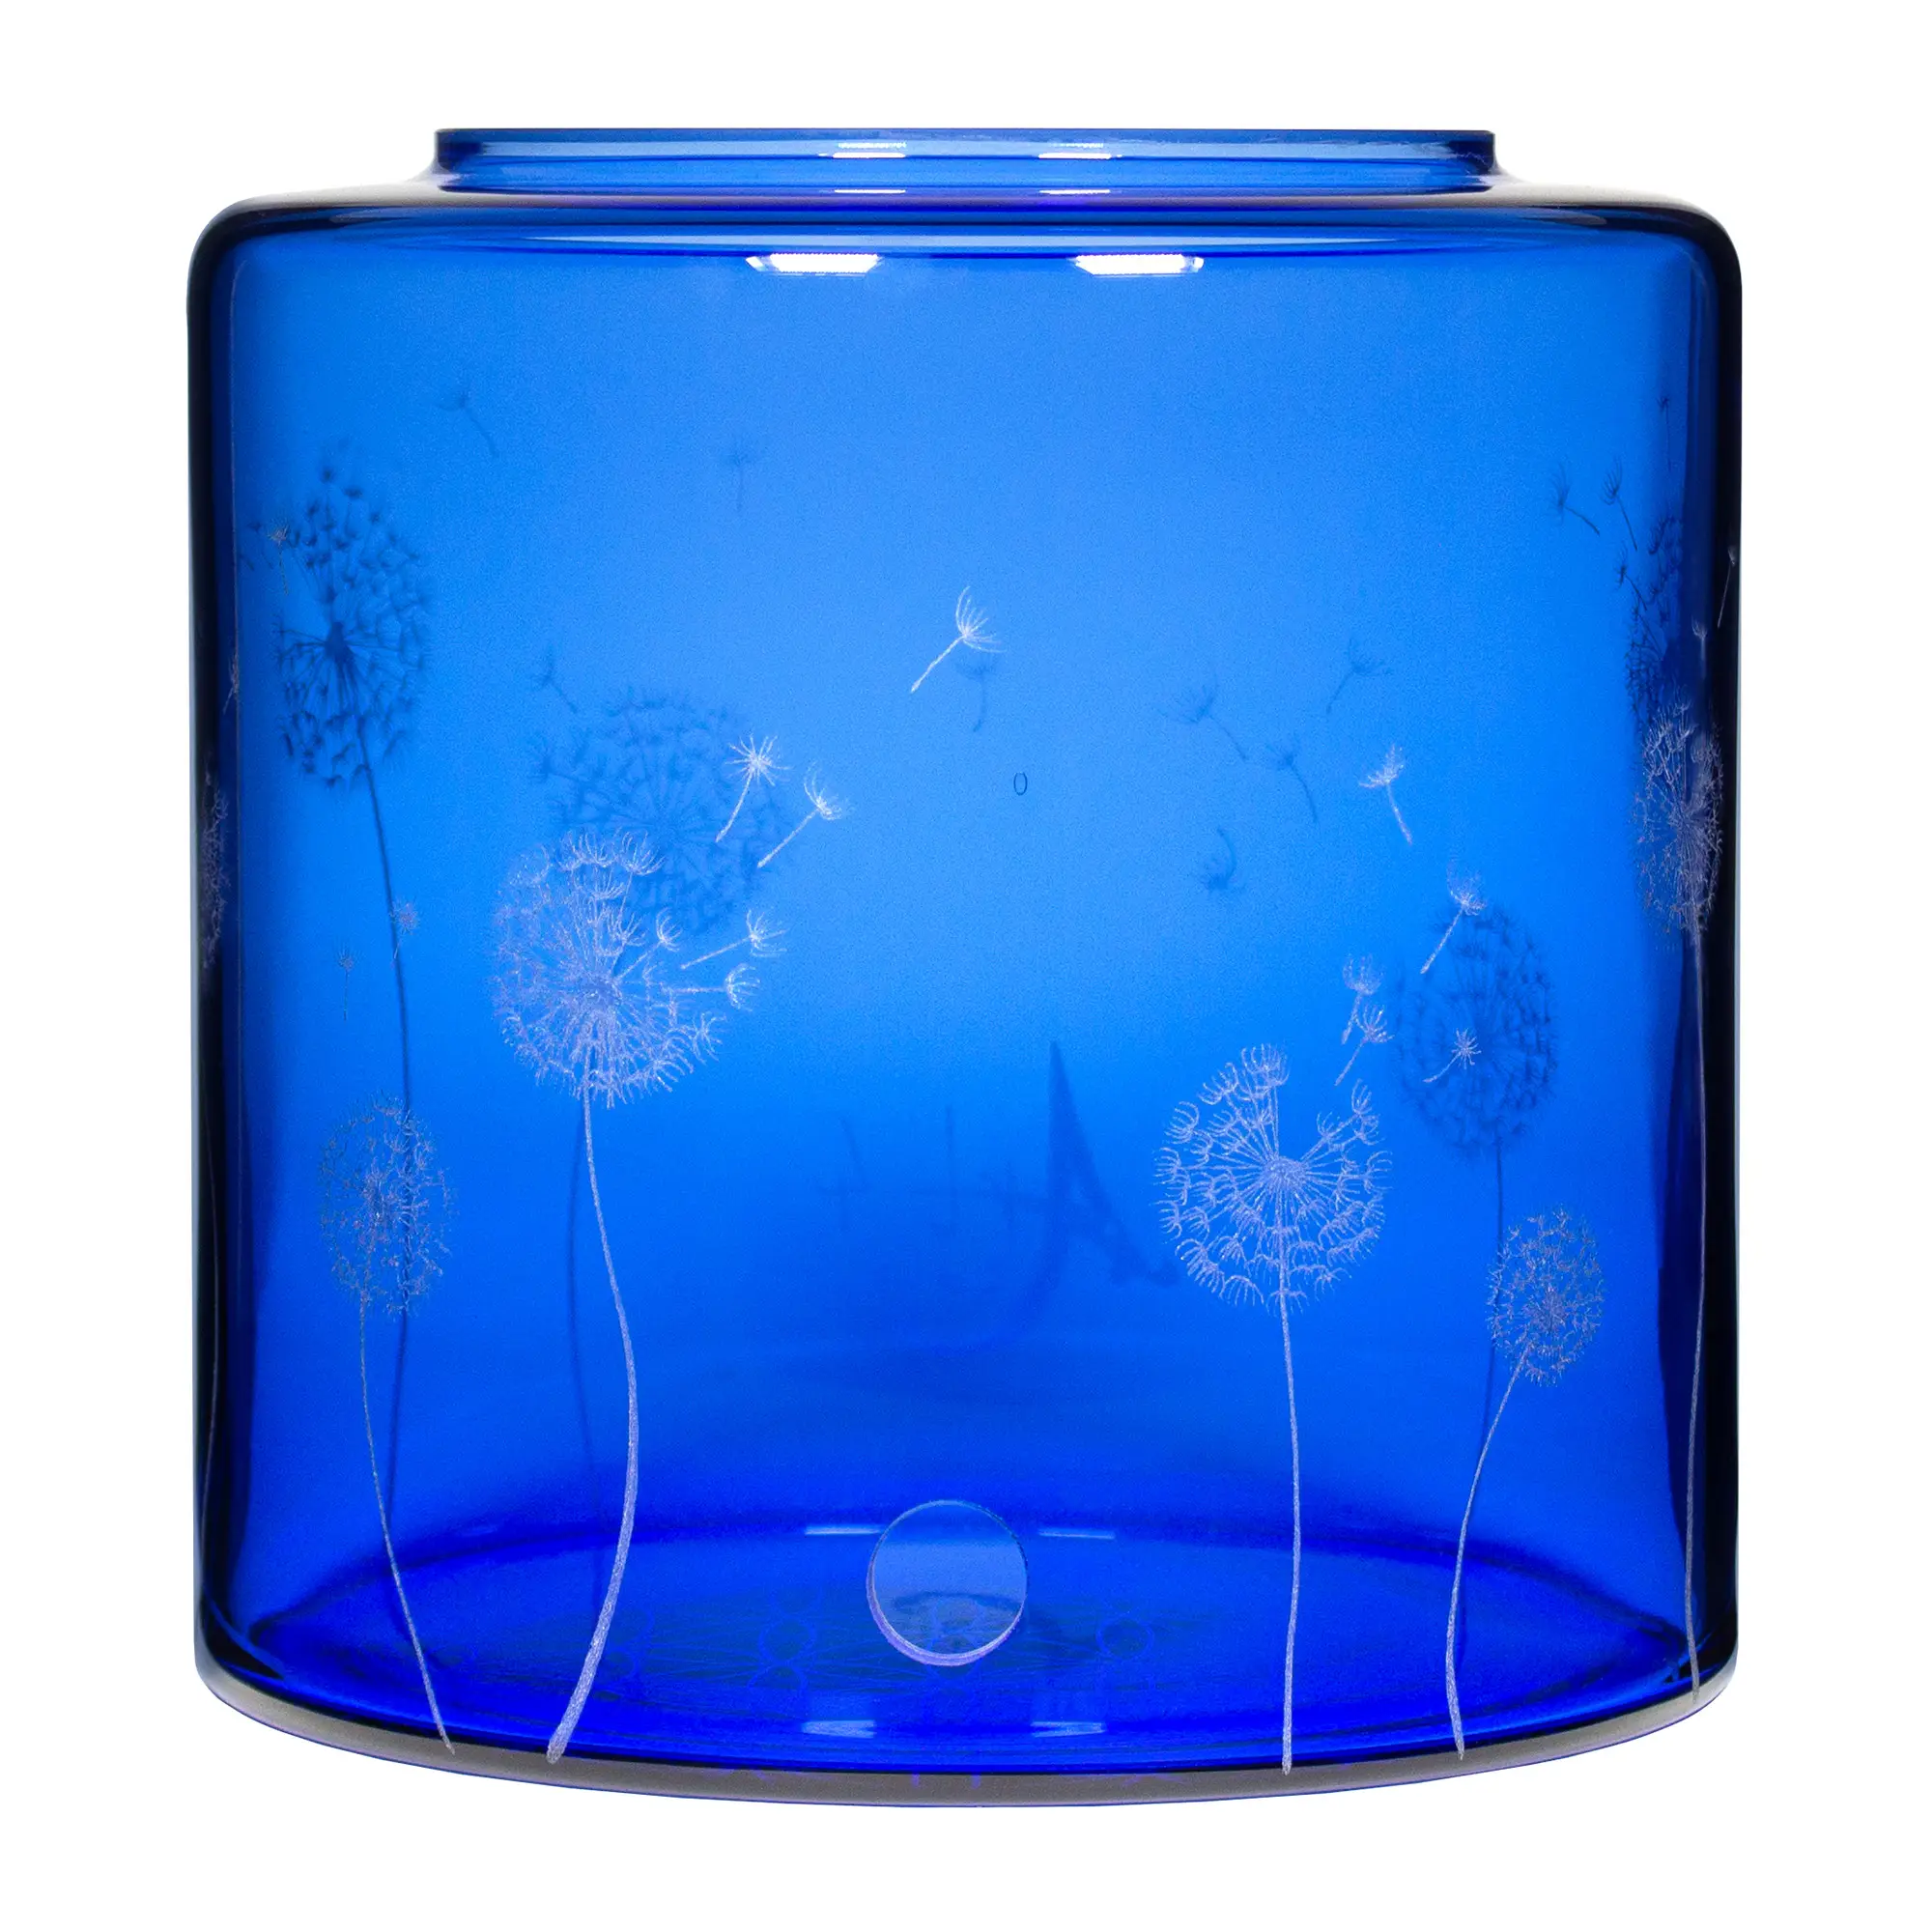 Ein Acala Wasserfilter Mini mit einer Handgravur. Die Gravur zeigt, auf blauem Glas, ganz viele Pusteblumen und einige samen die aus der Pusteblume herausfliegen.Ansicht von vorne.